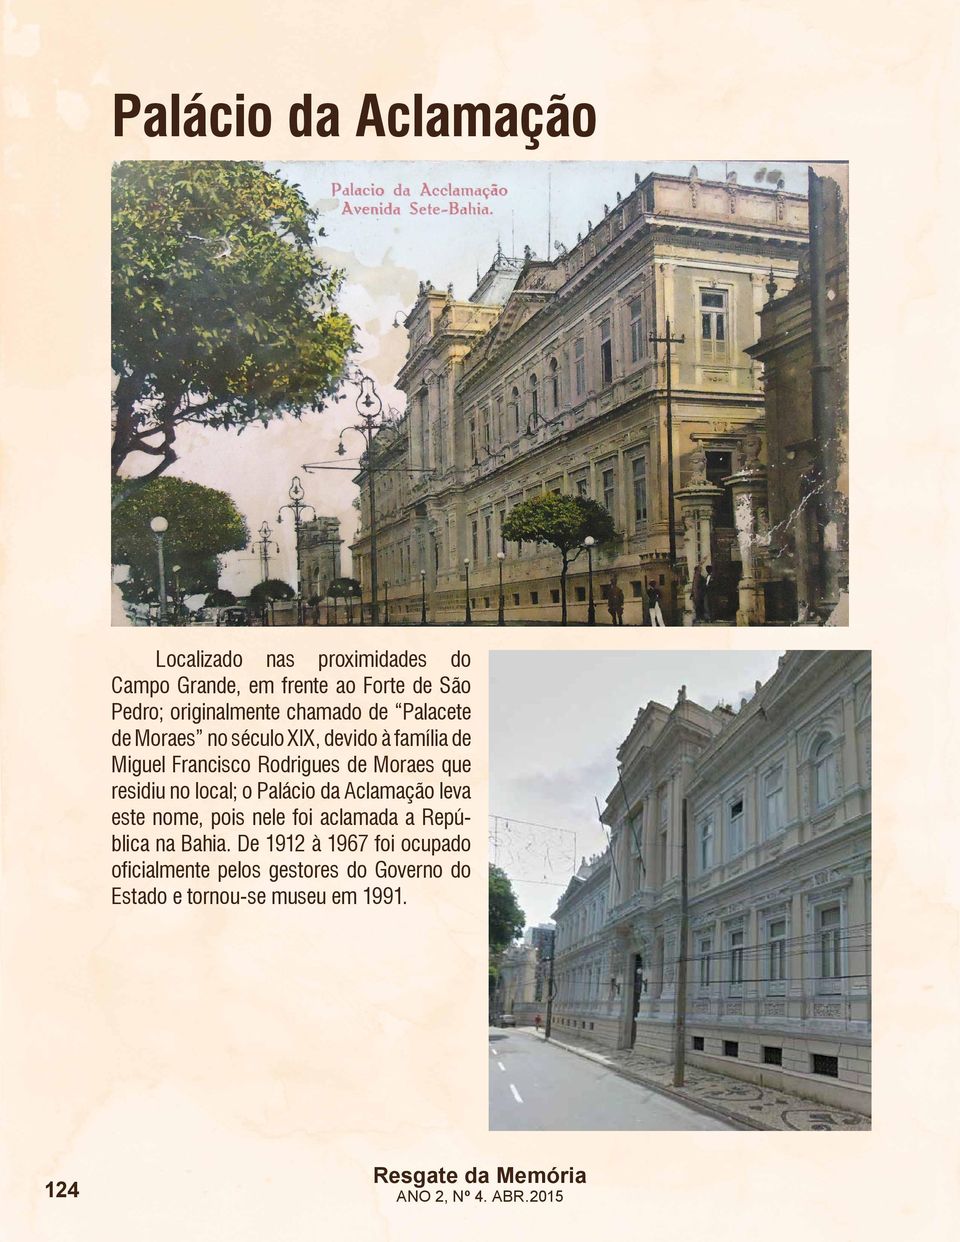 de Moraes que residiu no local; o Palácio da Aclamação leva este nome, pois nele foi aclamada a República